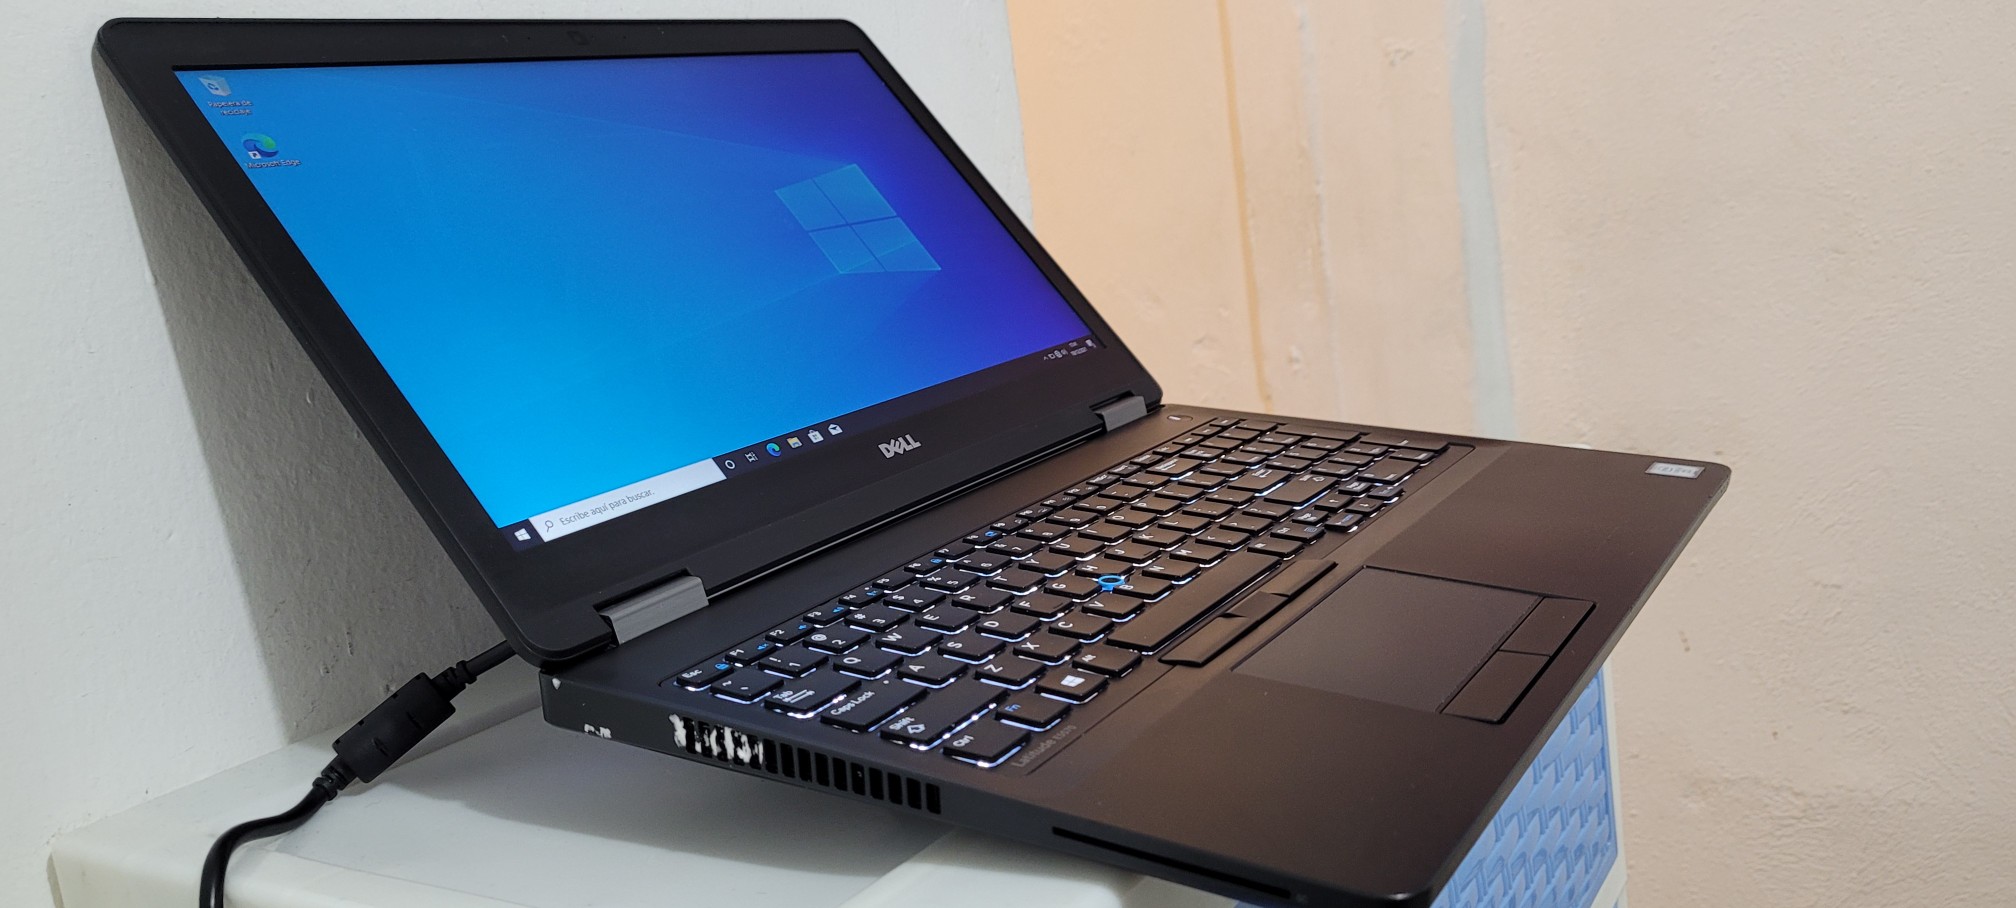 computadoras y laptops - Dell latitude 17 Pulg Core i7 Ram 8gb Disco 1000gb Teclado numerico 1